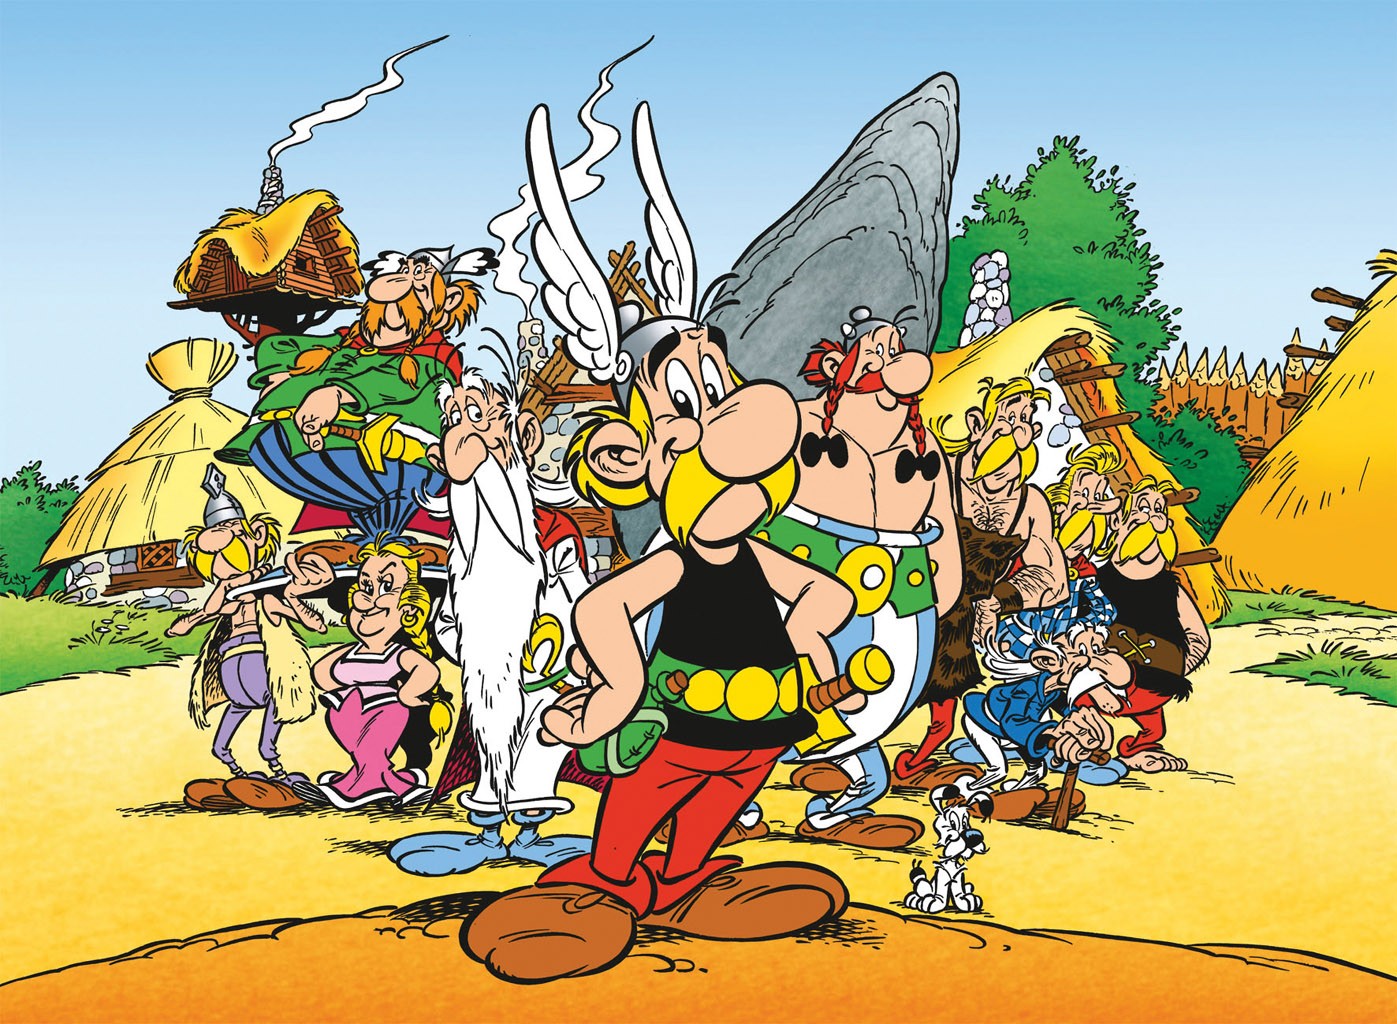 [Análise Retro Game] - Asterix O Desafio de Cesar - PC Asterix